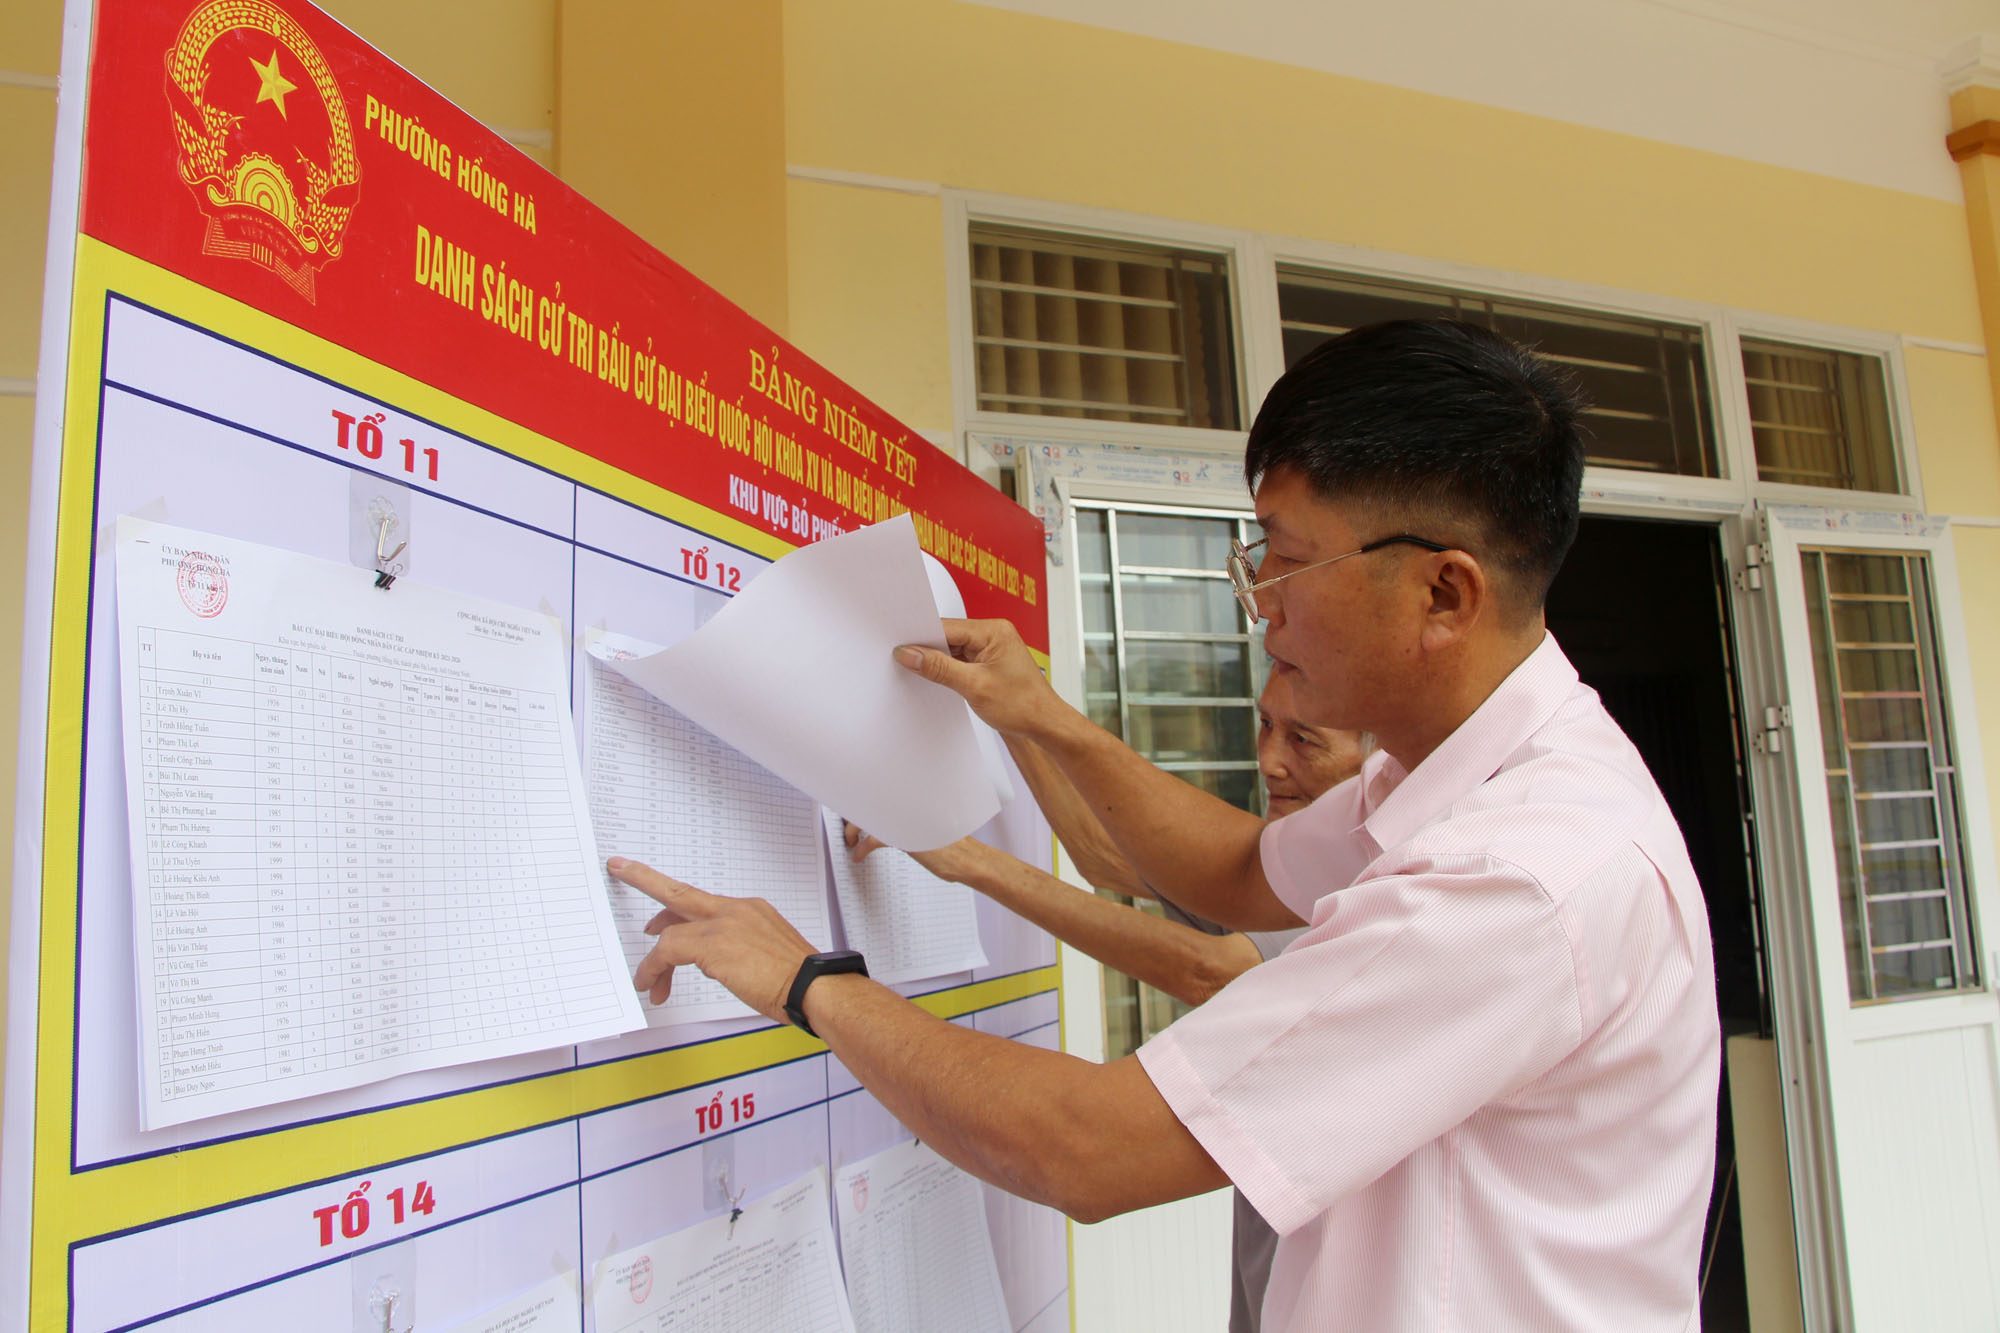 Nhân dân khu 9, phường Hồng Hà, TP Hạ Long xem danh sách cử tri niêm yết tại nhà văn hóa khu.